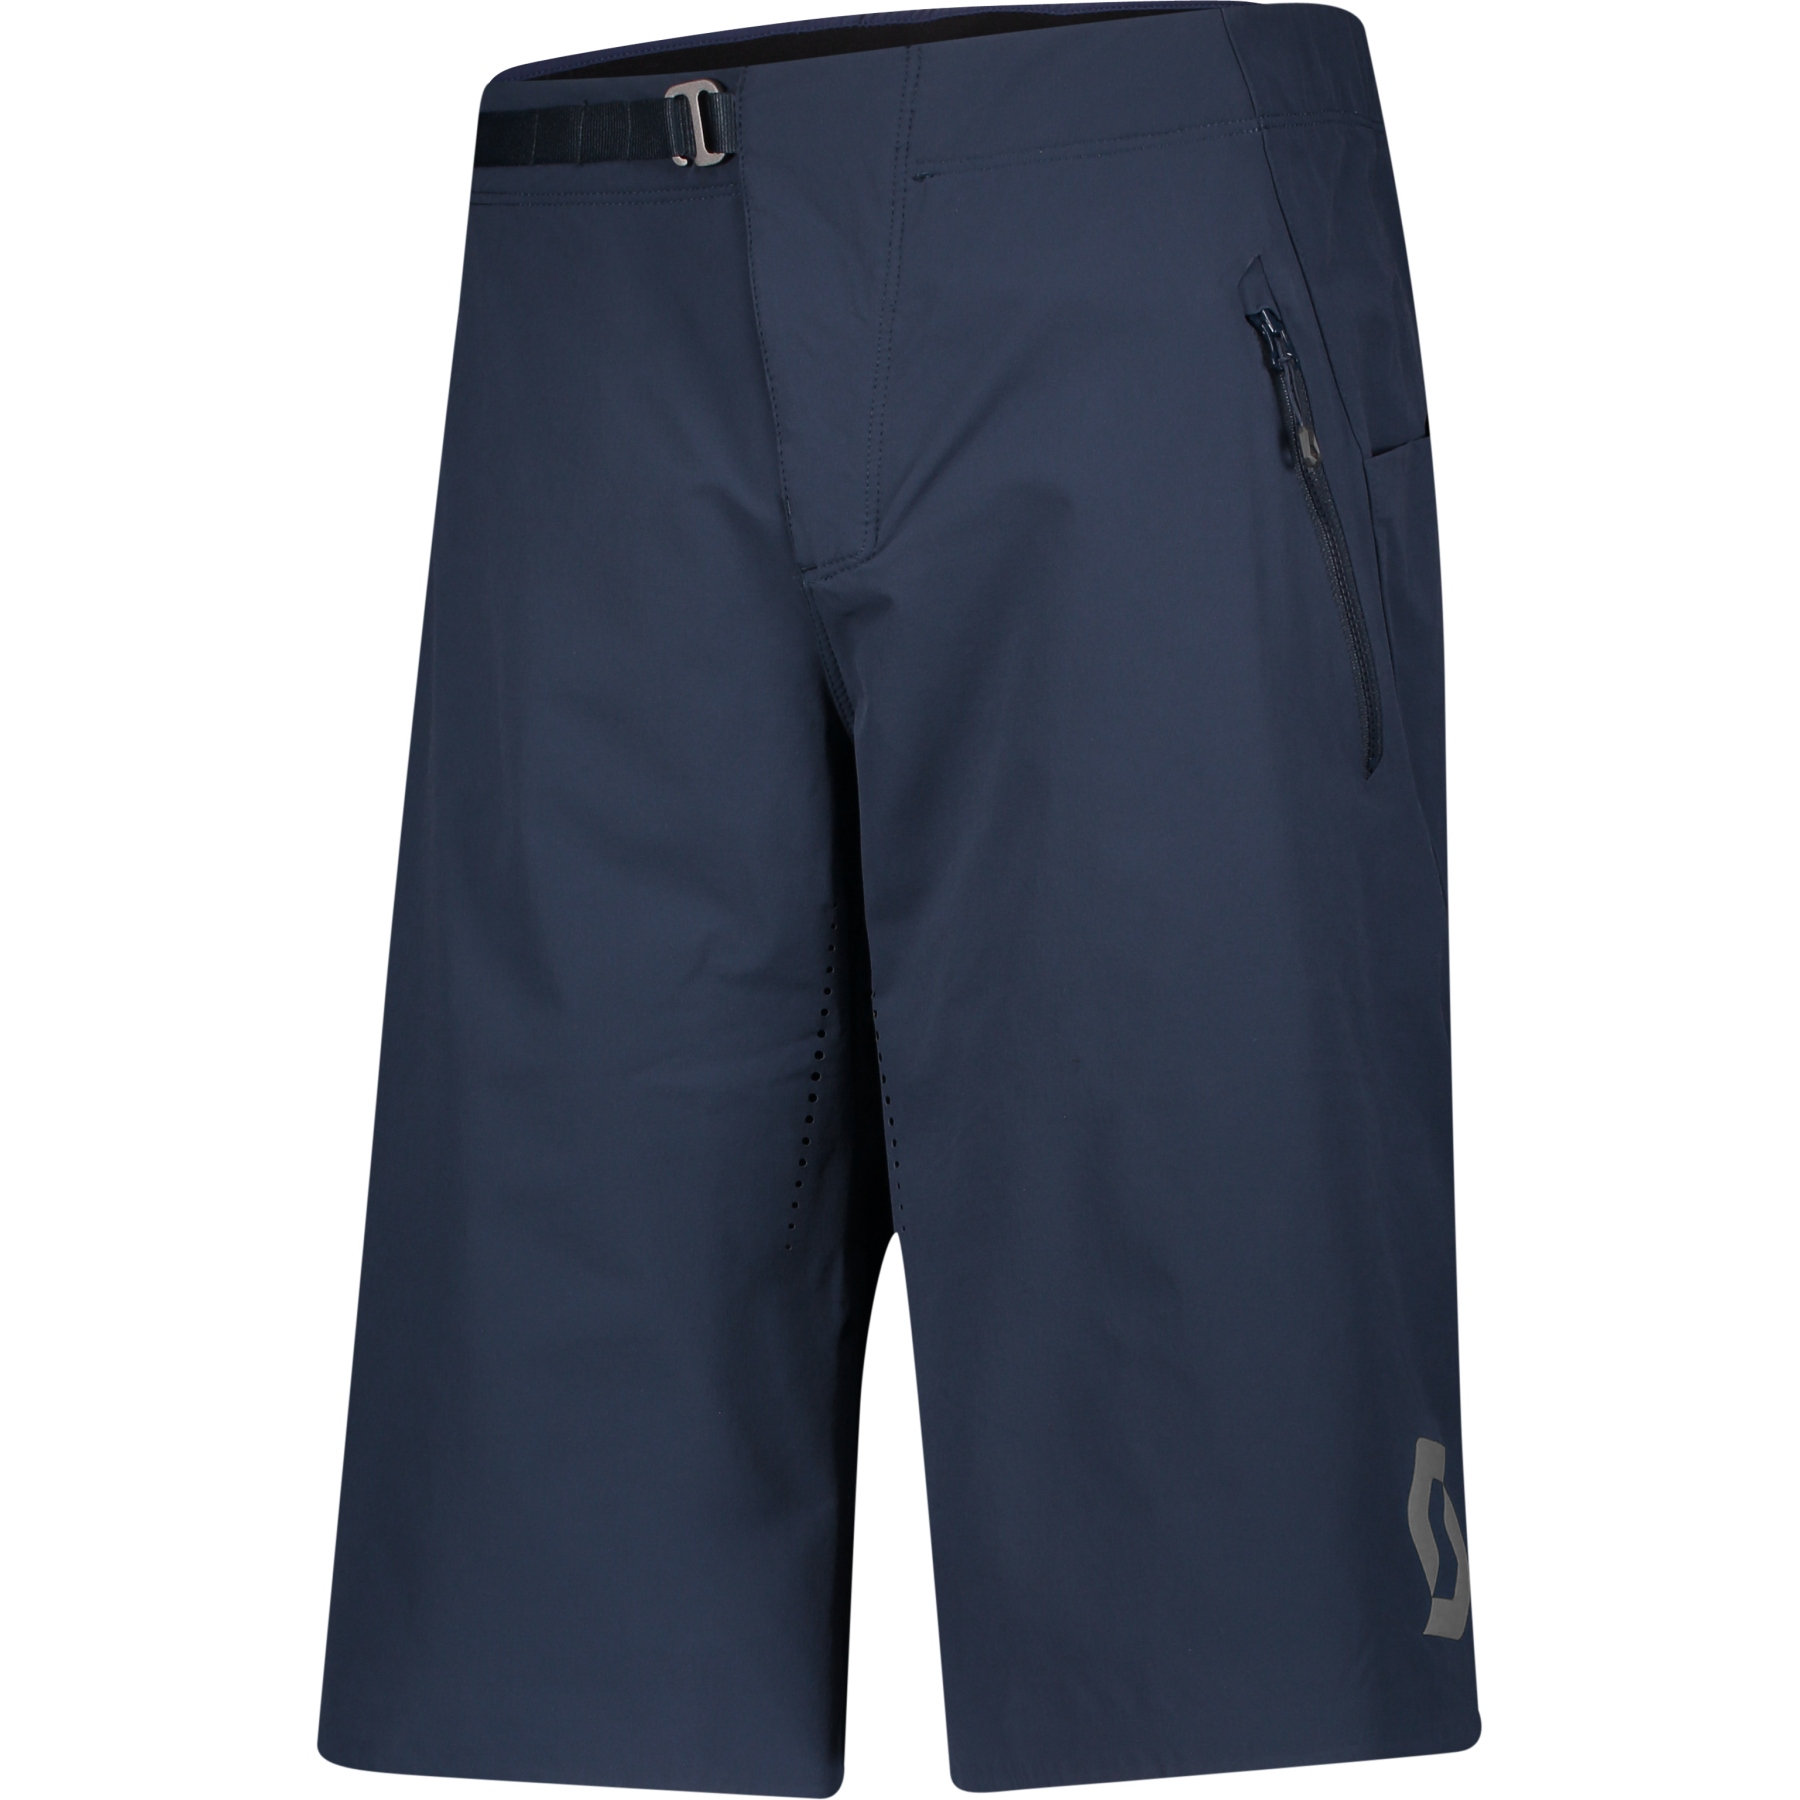 Produktbild von SCOTT Trail Vertic Pro Bike Shorts mit Sitzpolster Herren - midnight blue